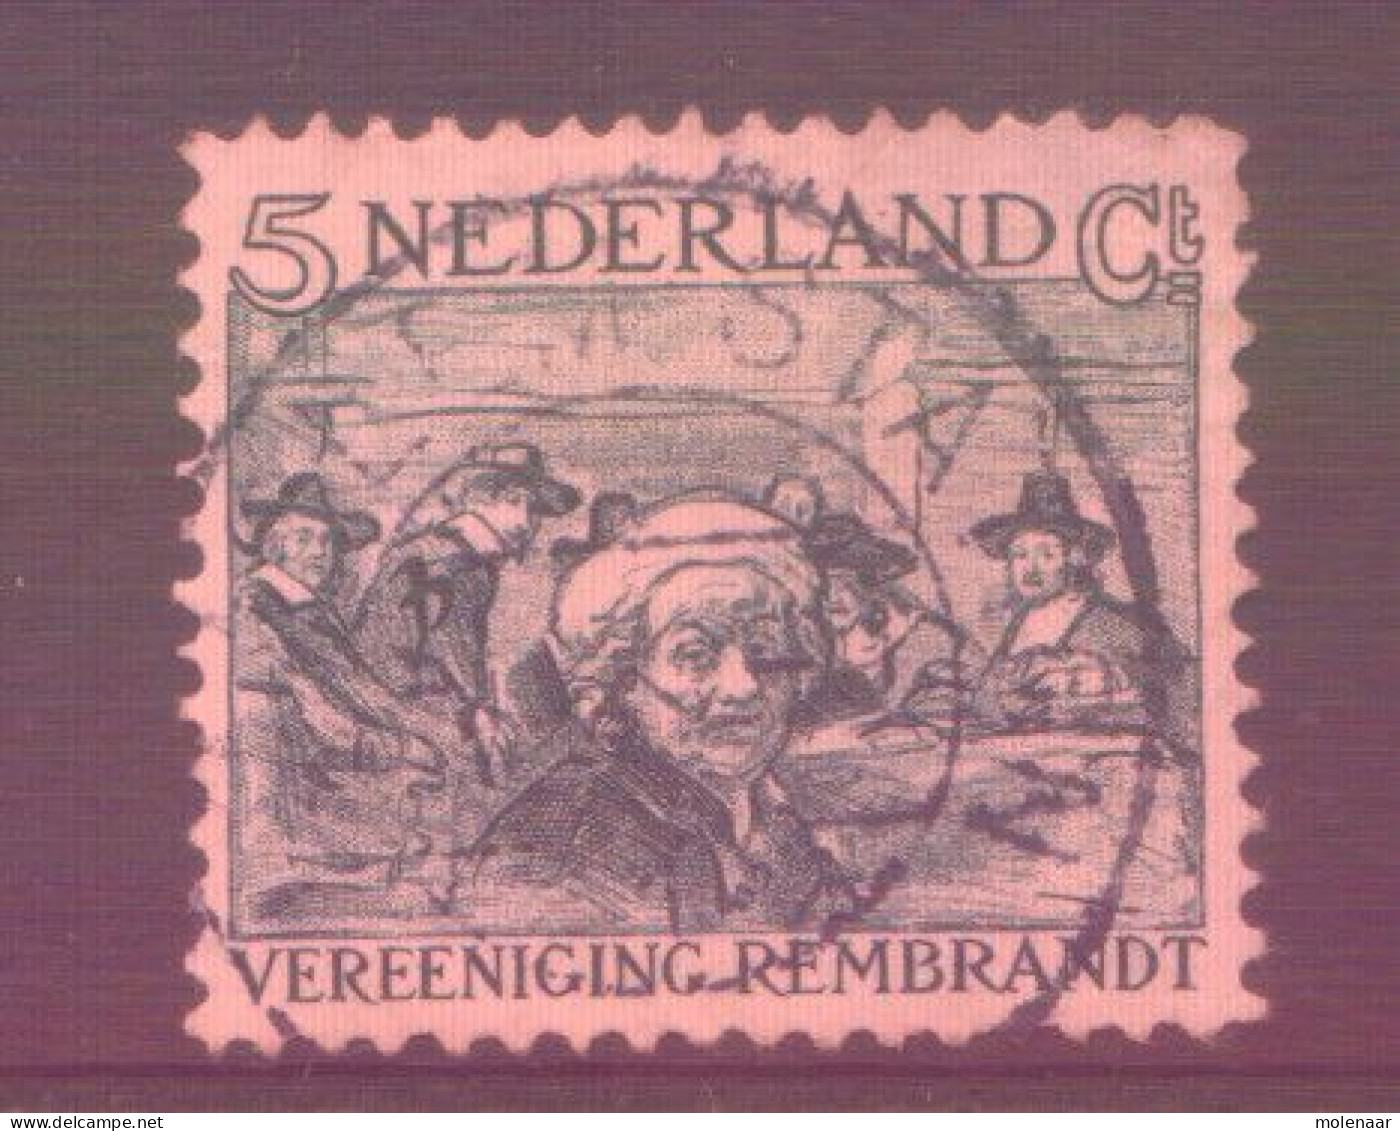 Postzegels > Europa > Nederland > Periode 1891-1948 (Wilhelmina) > 1891-1909 > 229 Gebruikt (11761) - Gebraucht